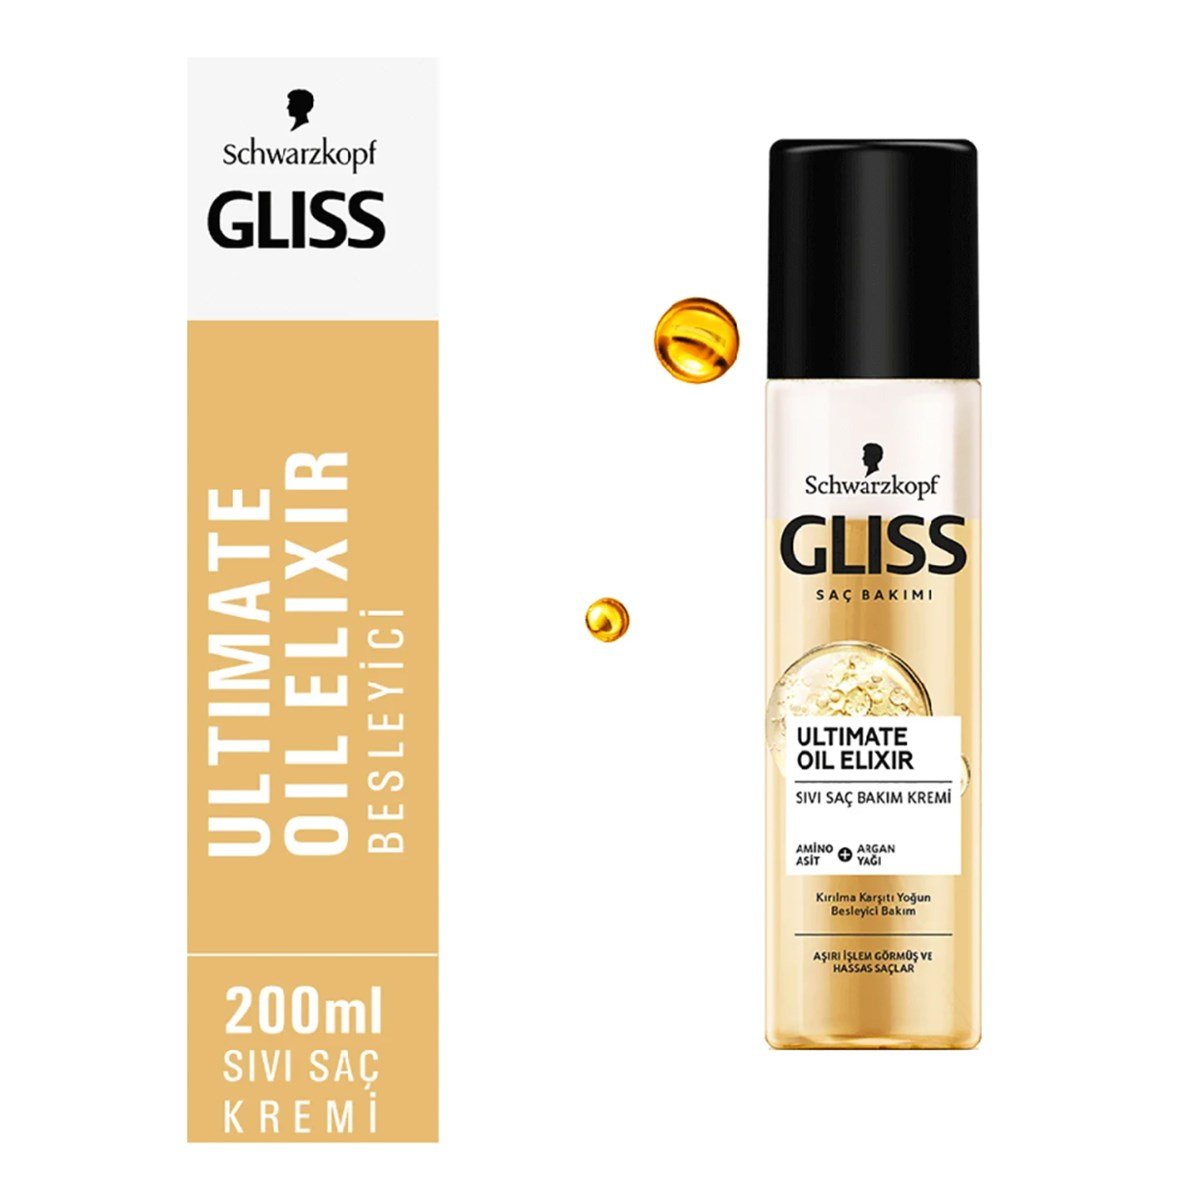 Gliss Ultimate Oil Elixir Sıvı Saç Kremi 200ml - Platin